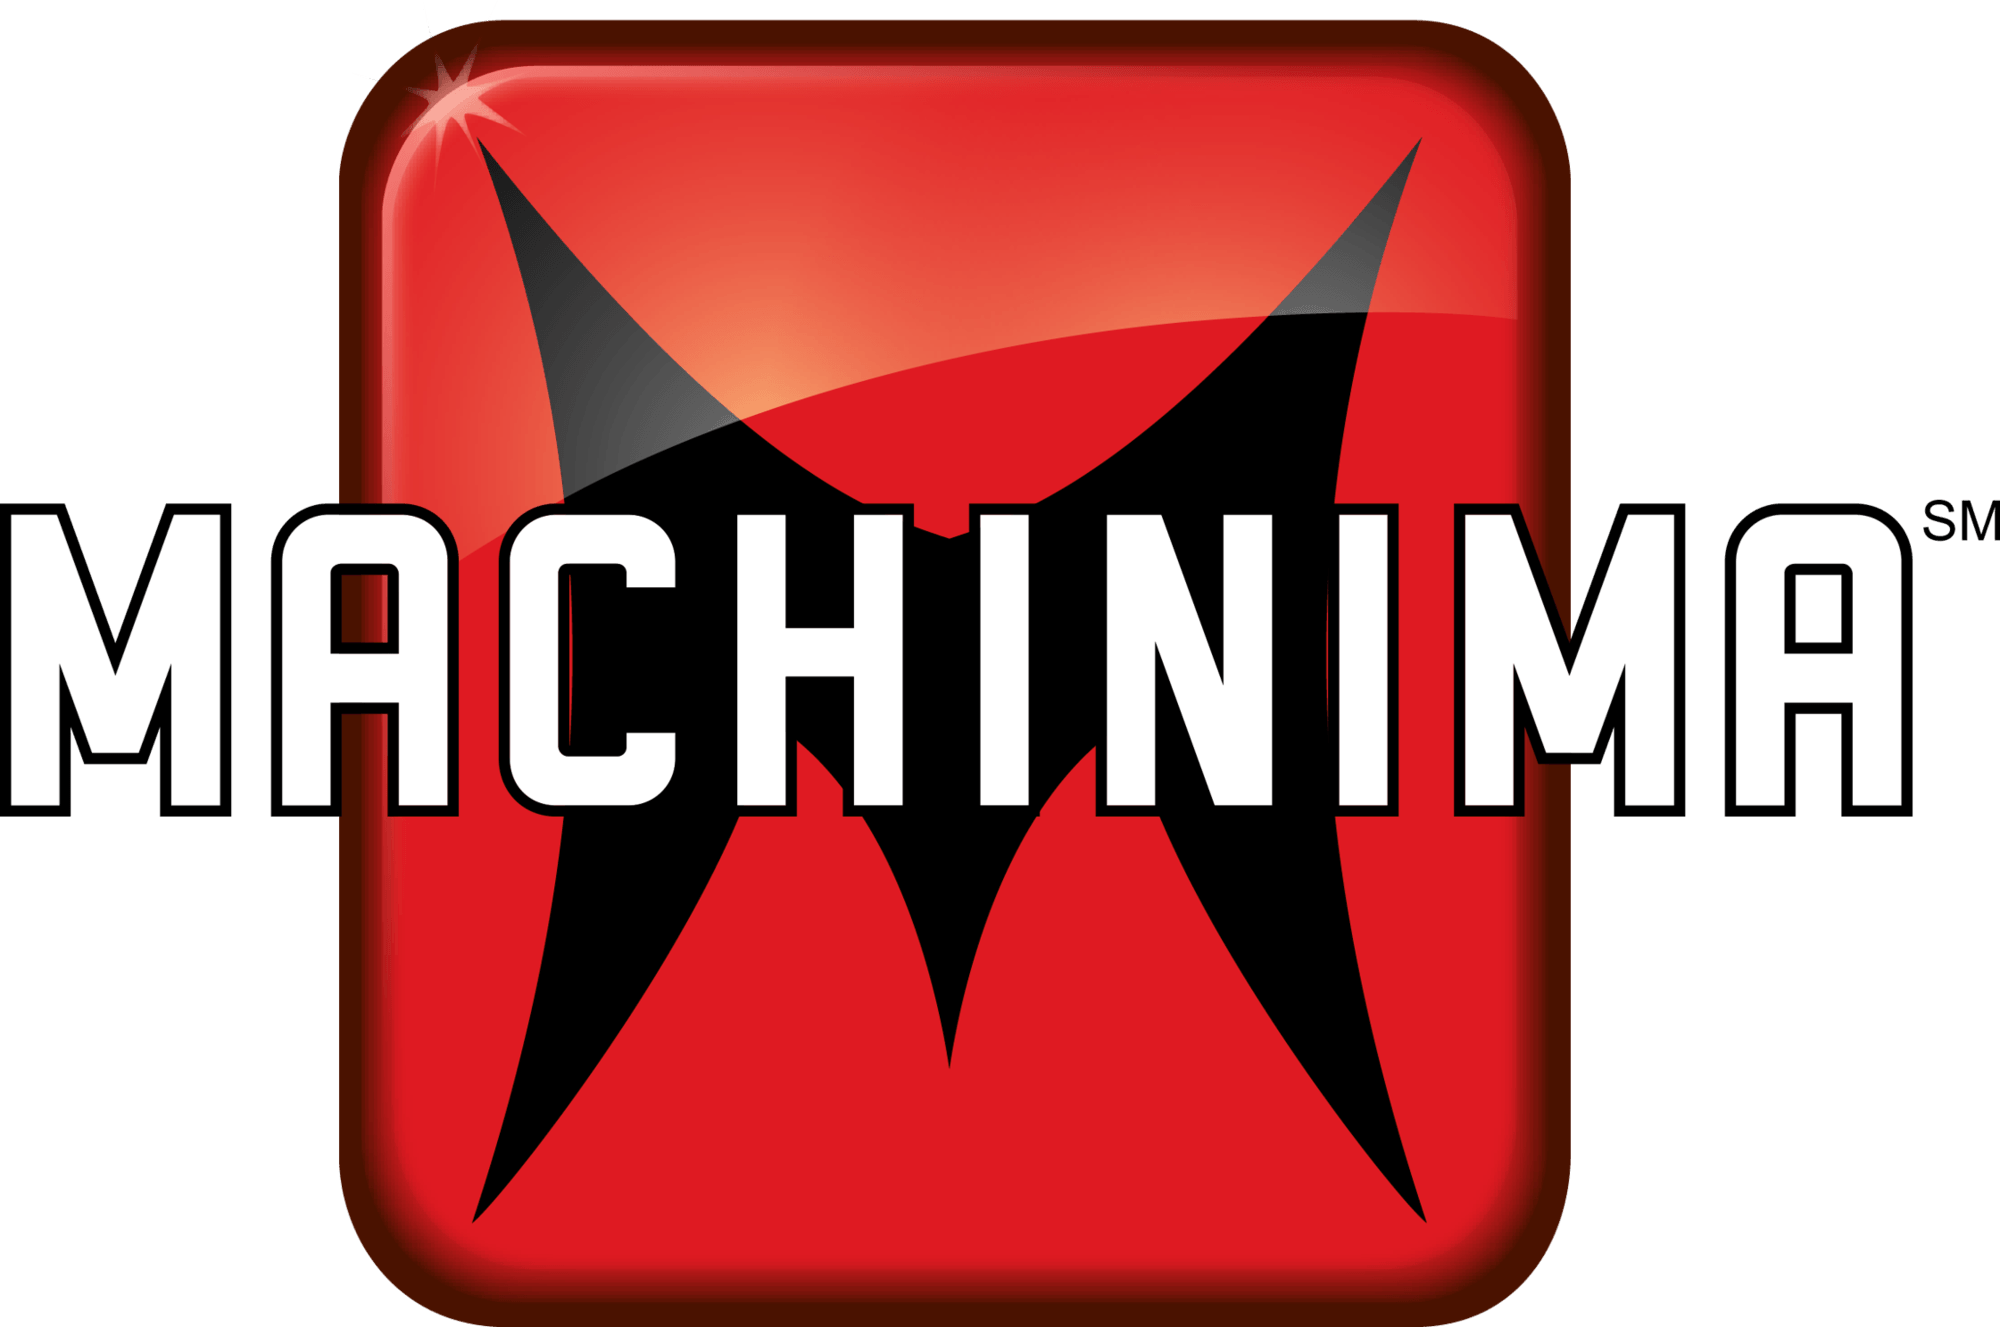 Machinima Logo - Machinima | Logopedia | FANDOM powered by Wikia